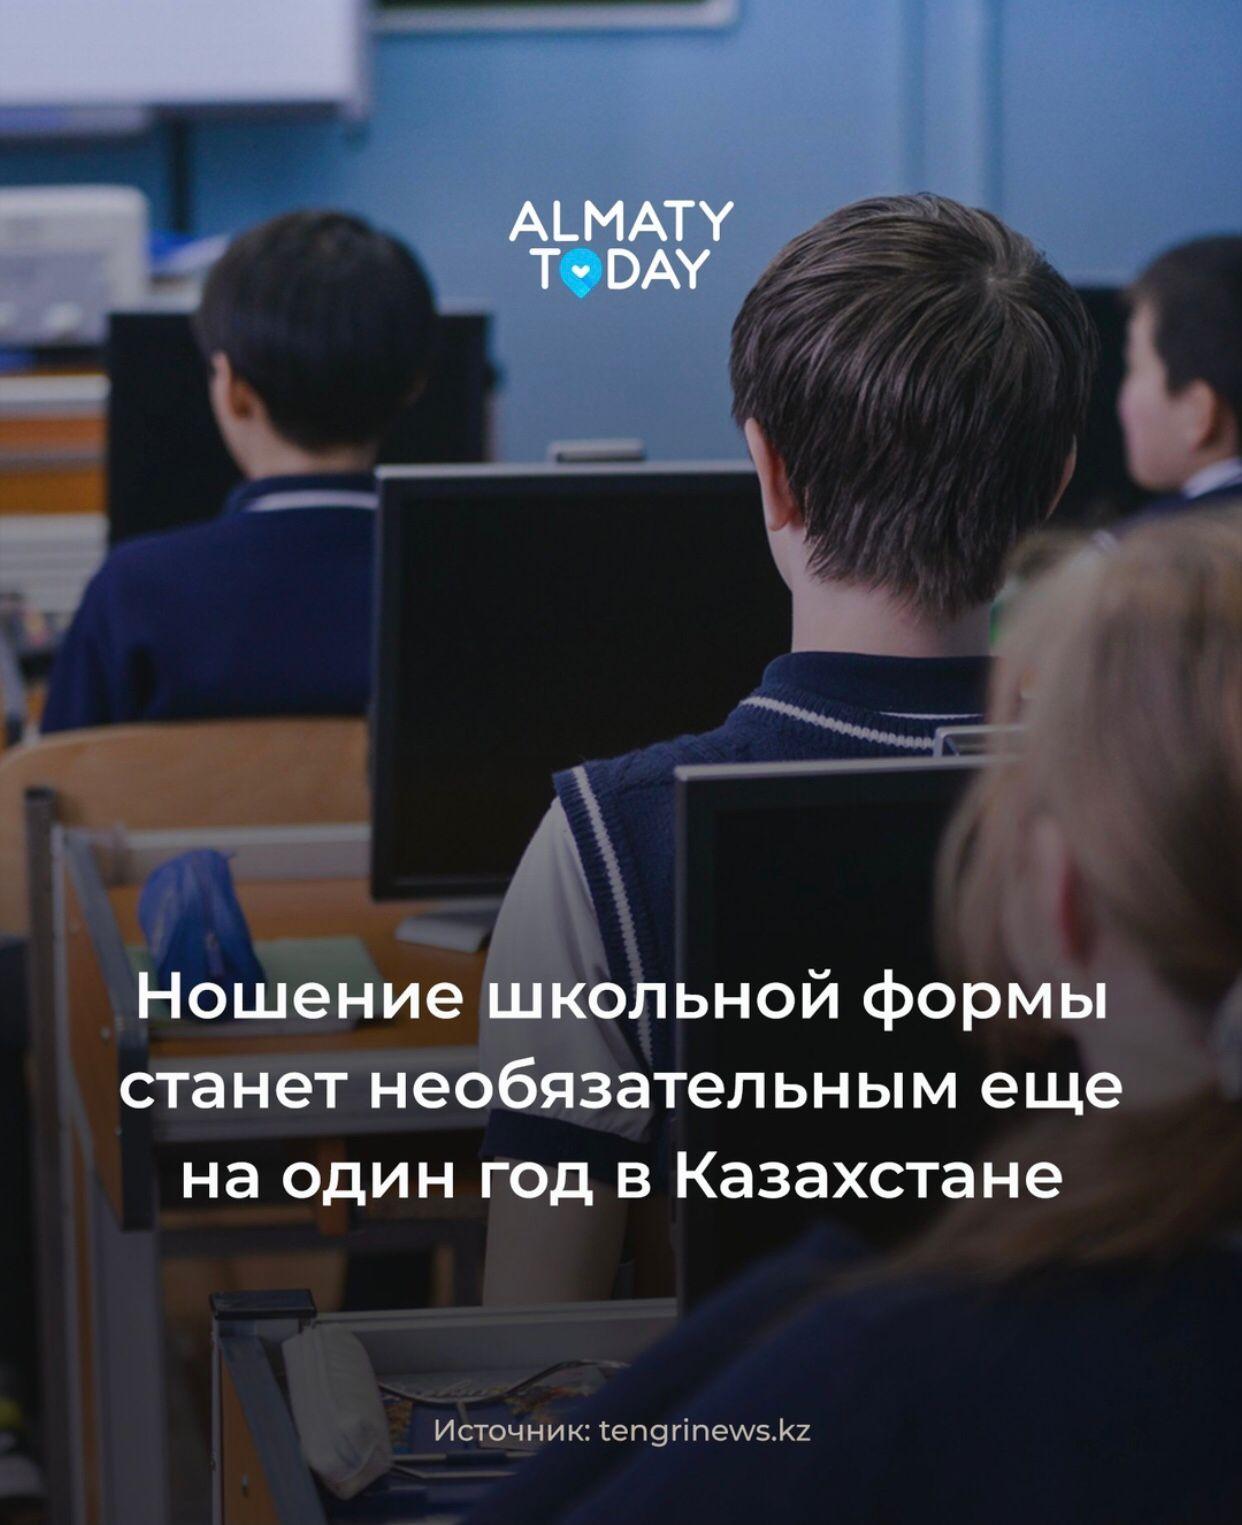 Ношение школьной формы станет необязательным еще на один год в Казахстане